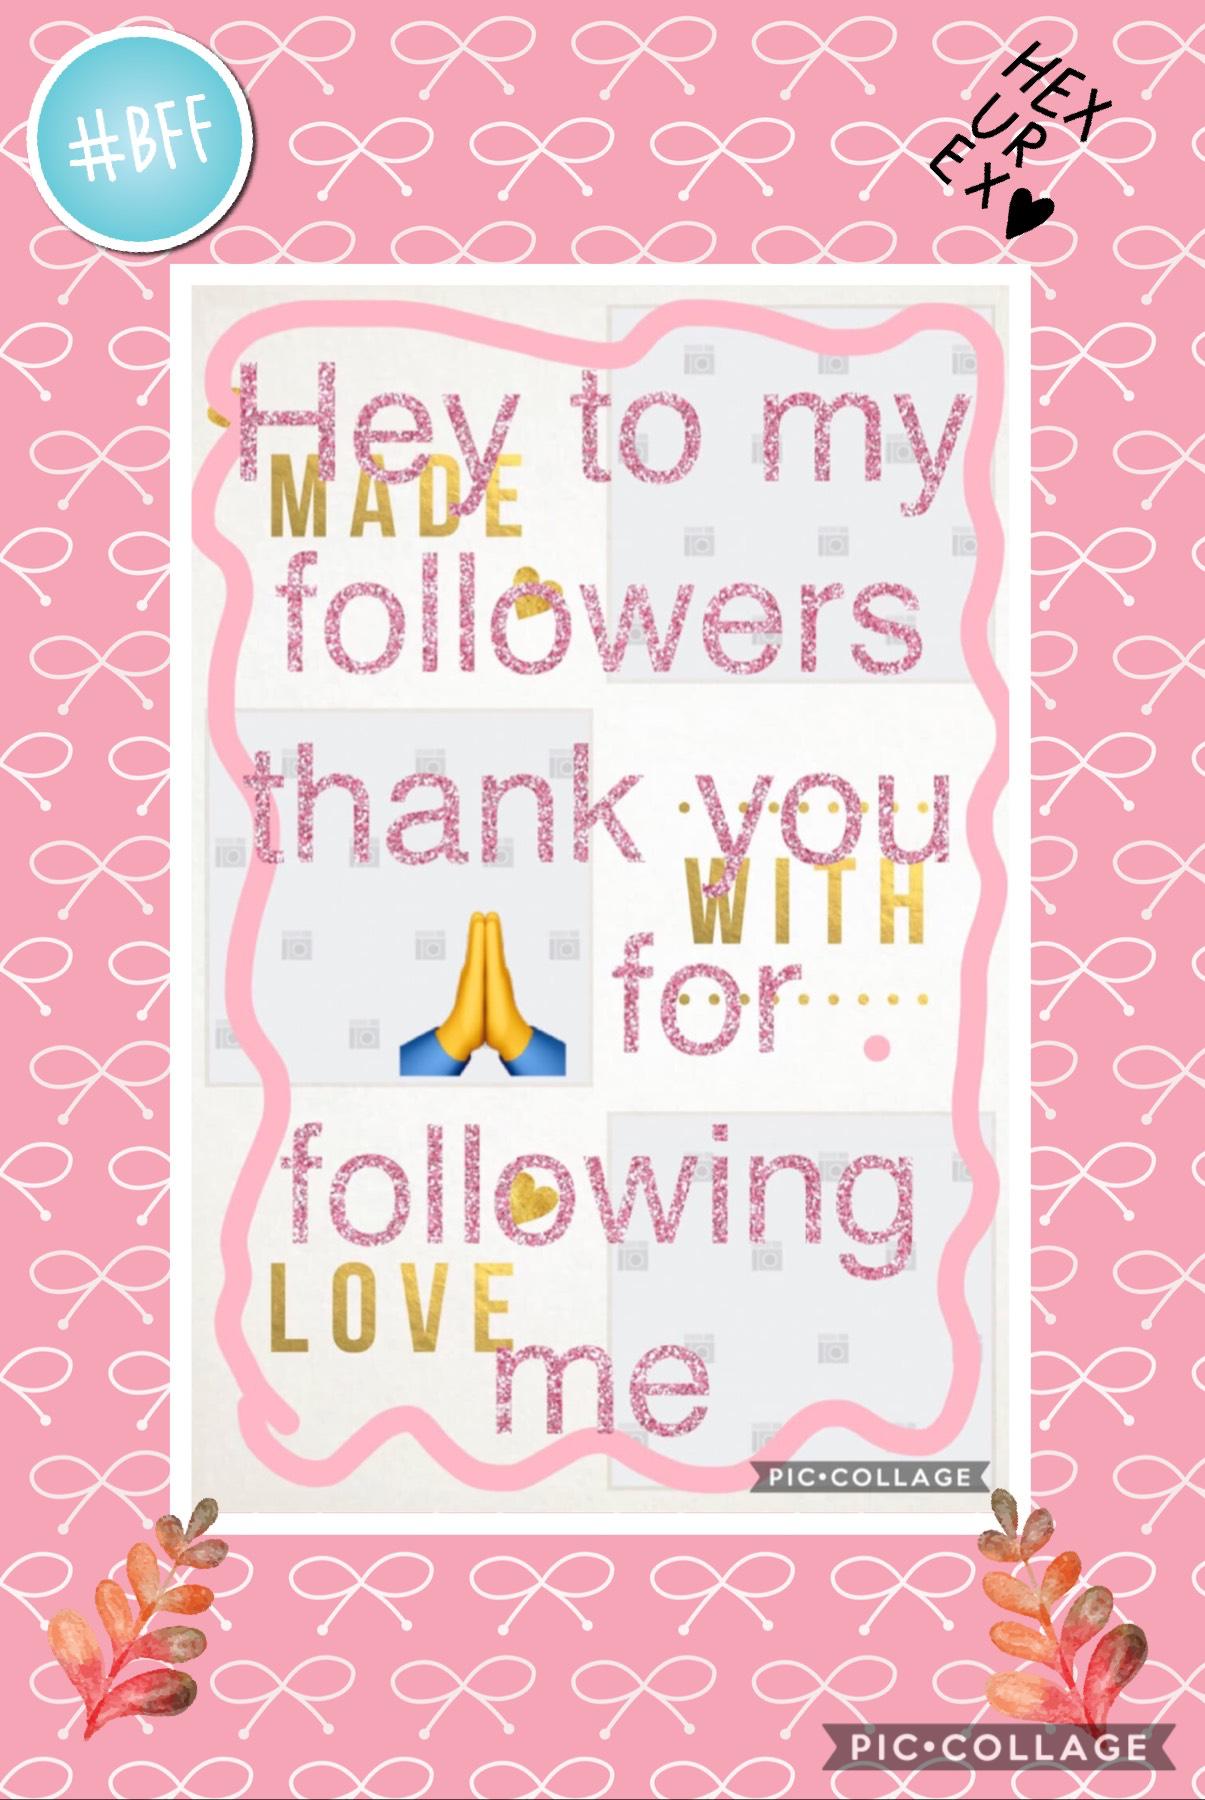 Love ya followers 